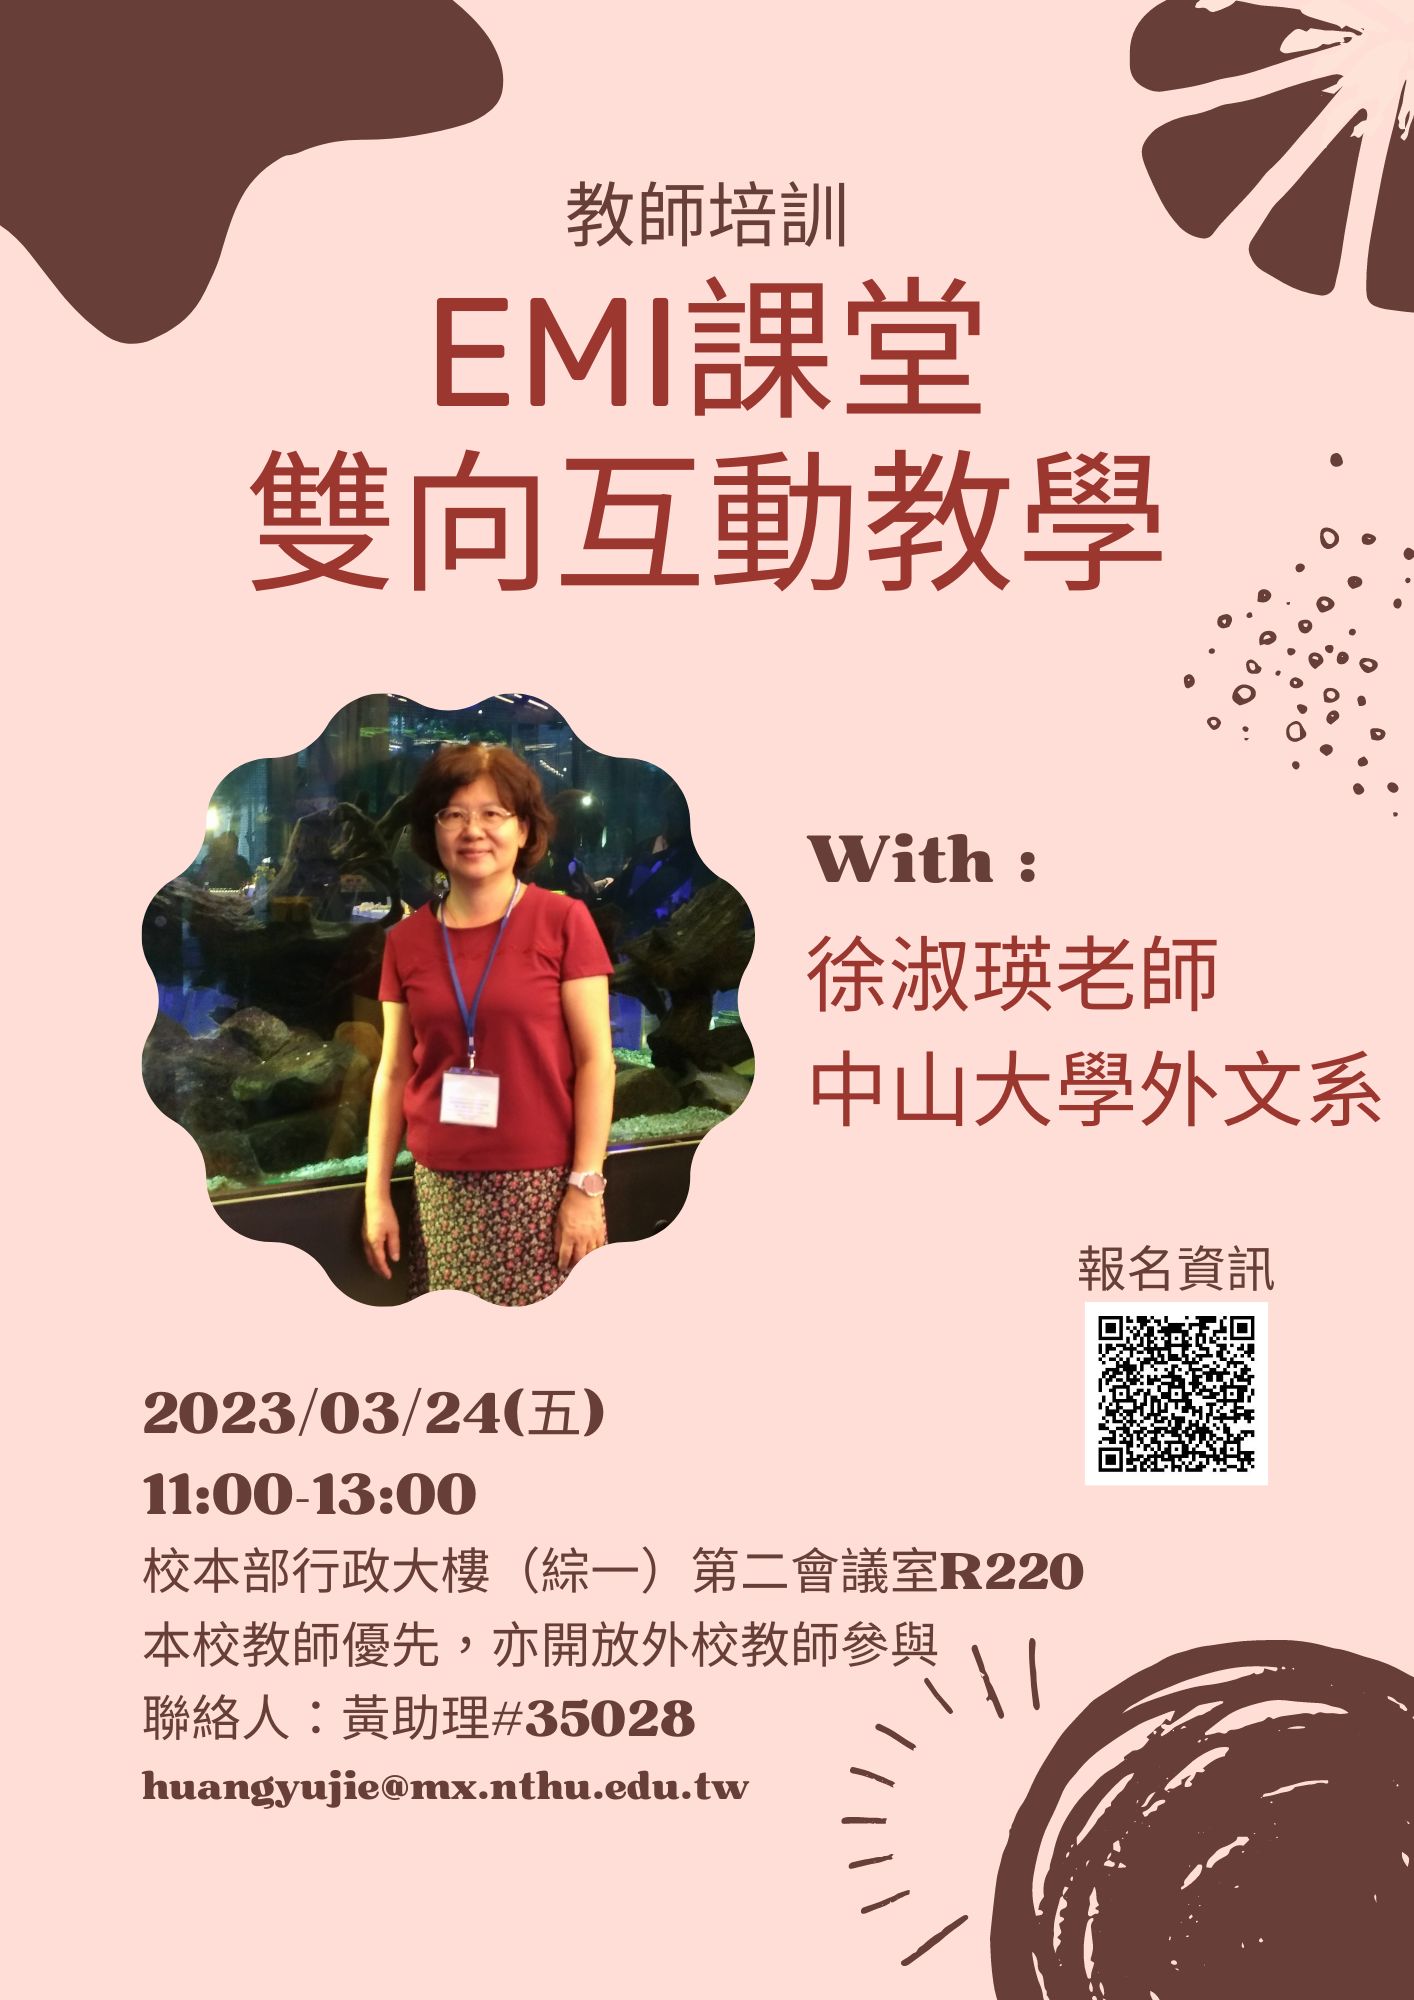 國立清華大學EMI課堂之雙向互動教學